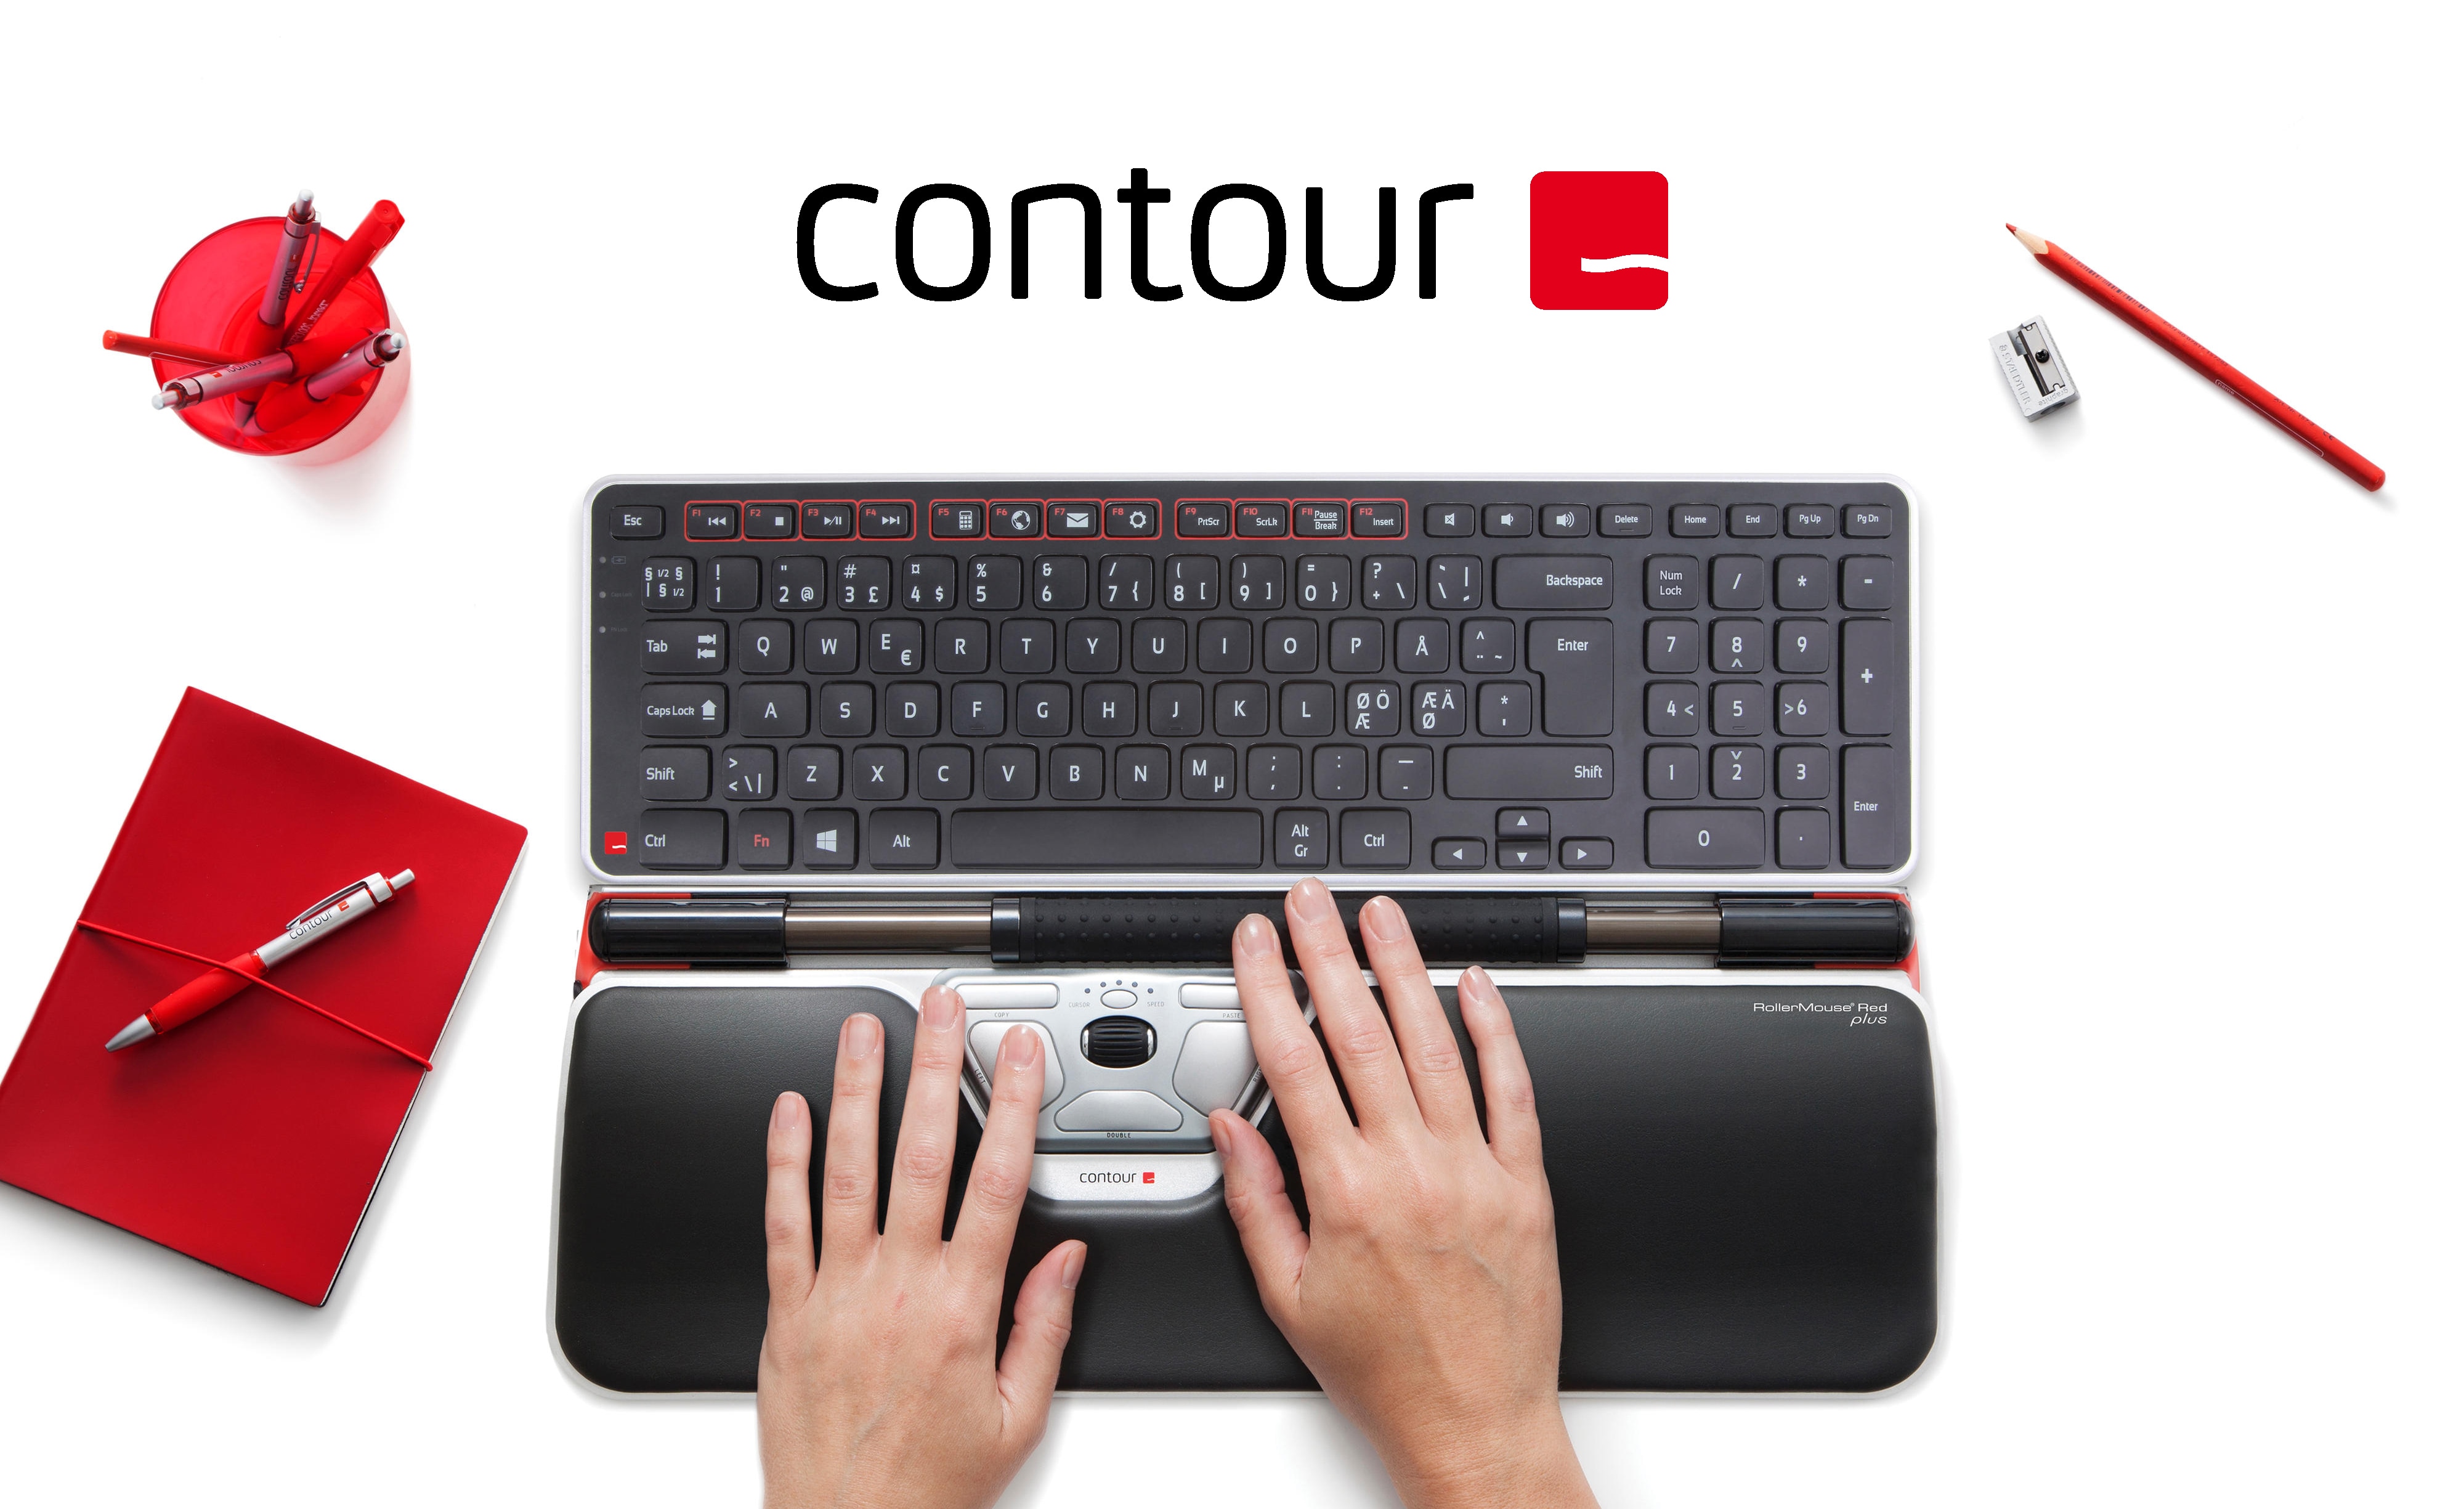 Contour tilbehør på et hvitt bord ved siden av en dataskjerm og rødt kontorrekvisita